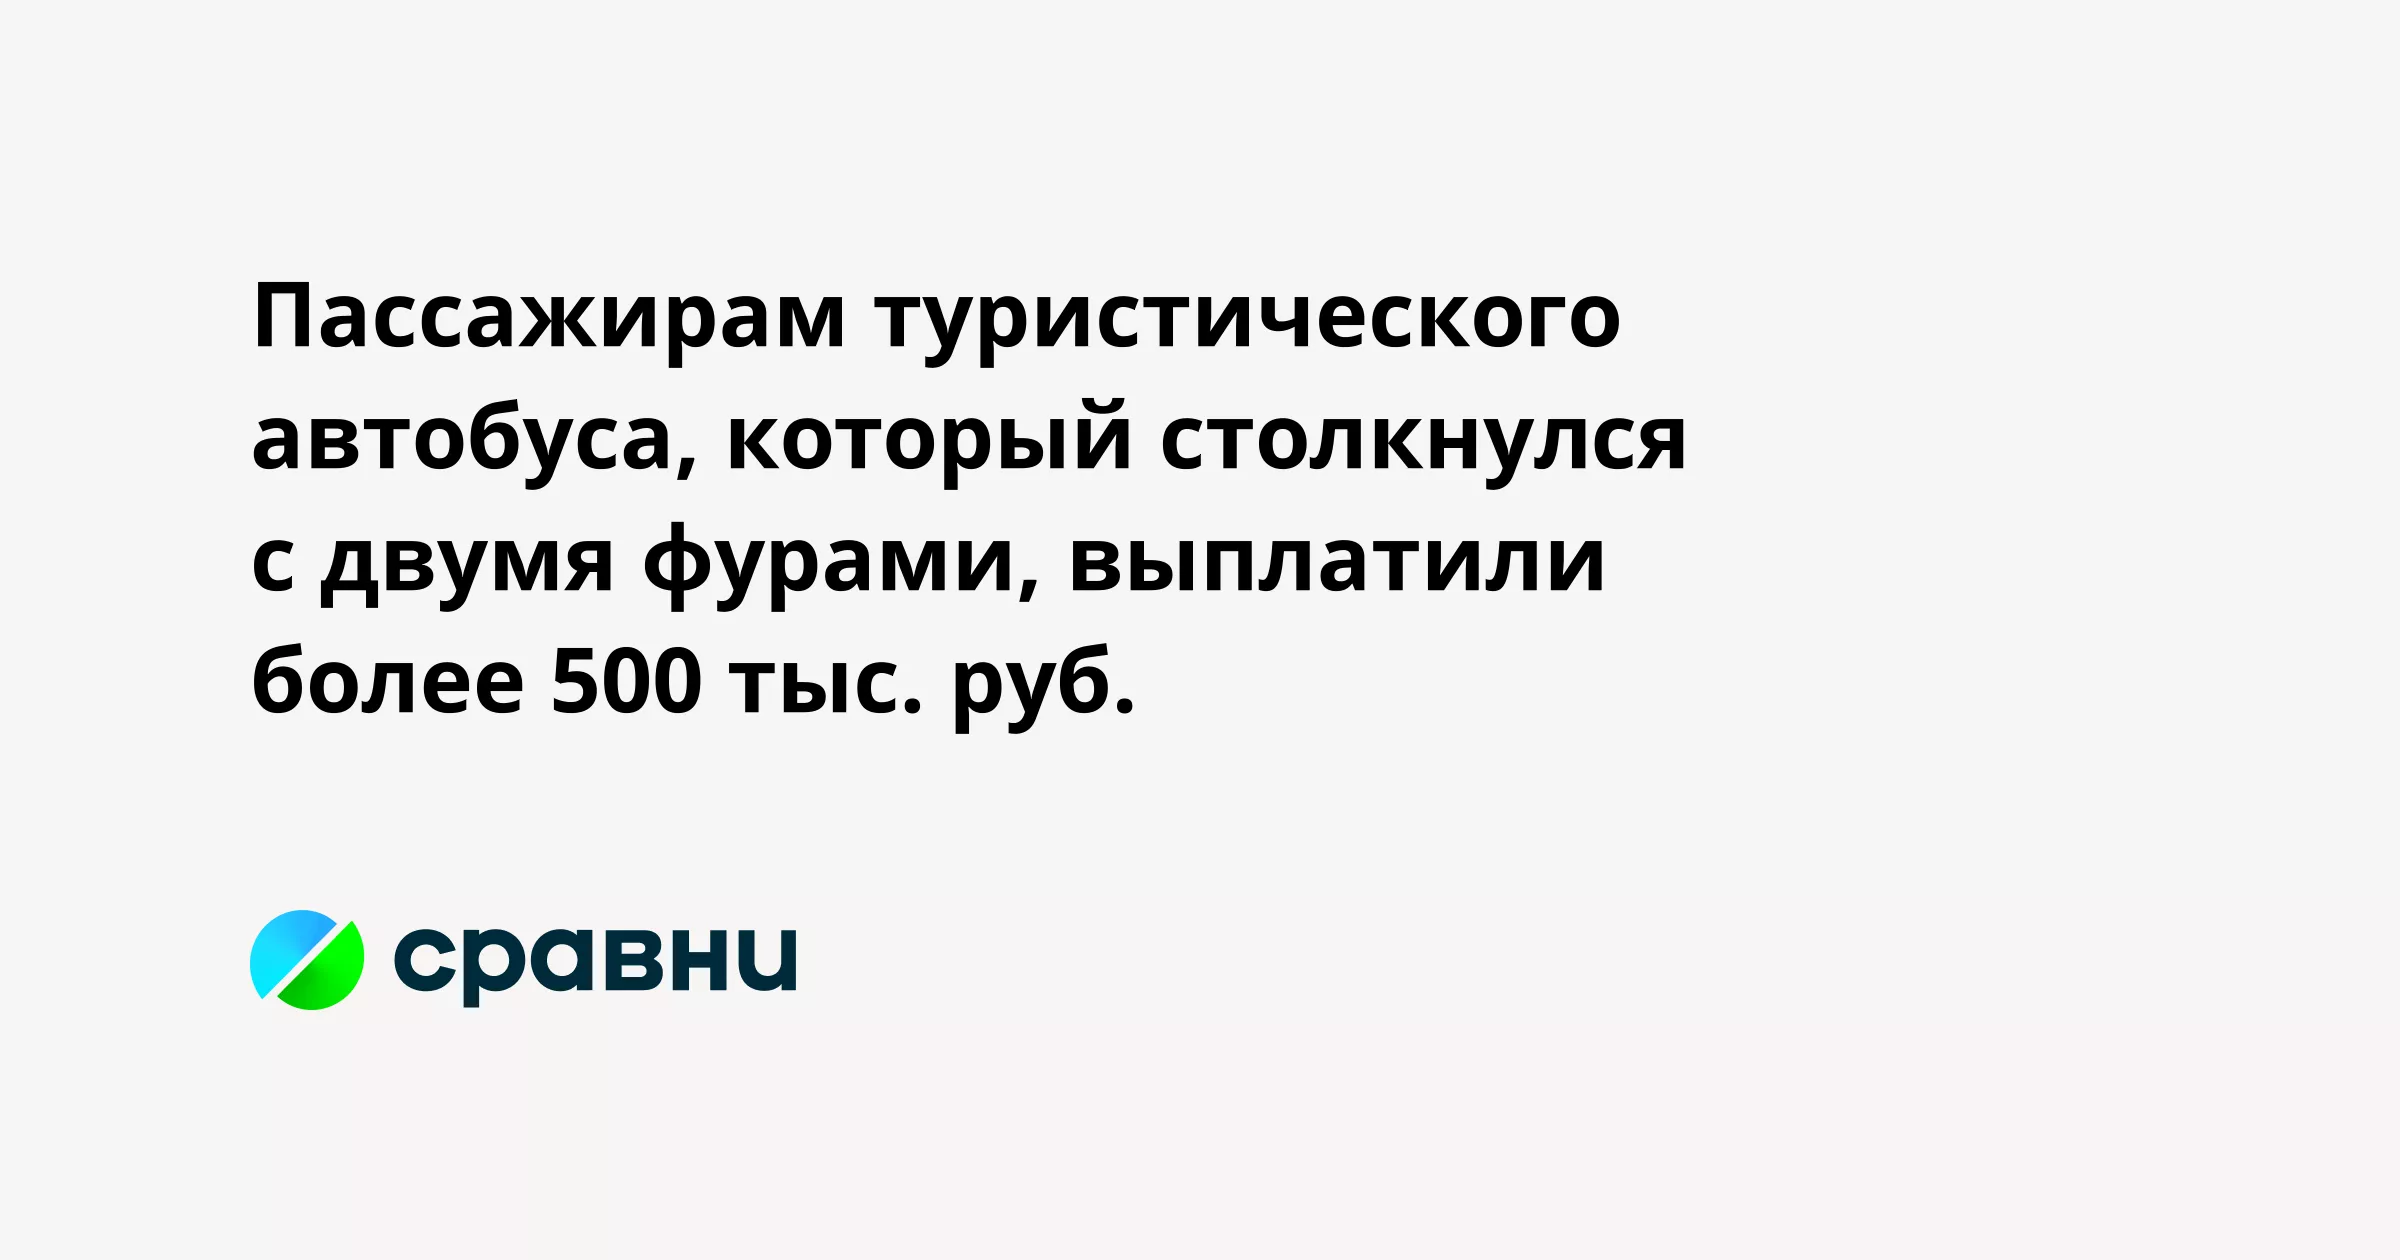 Пассажирам туристического автобуса, который столкнулся с двумя фурами, выплатили более 500 тыс. руб.